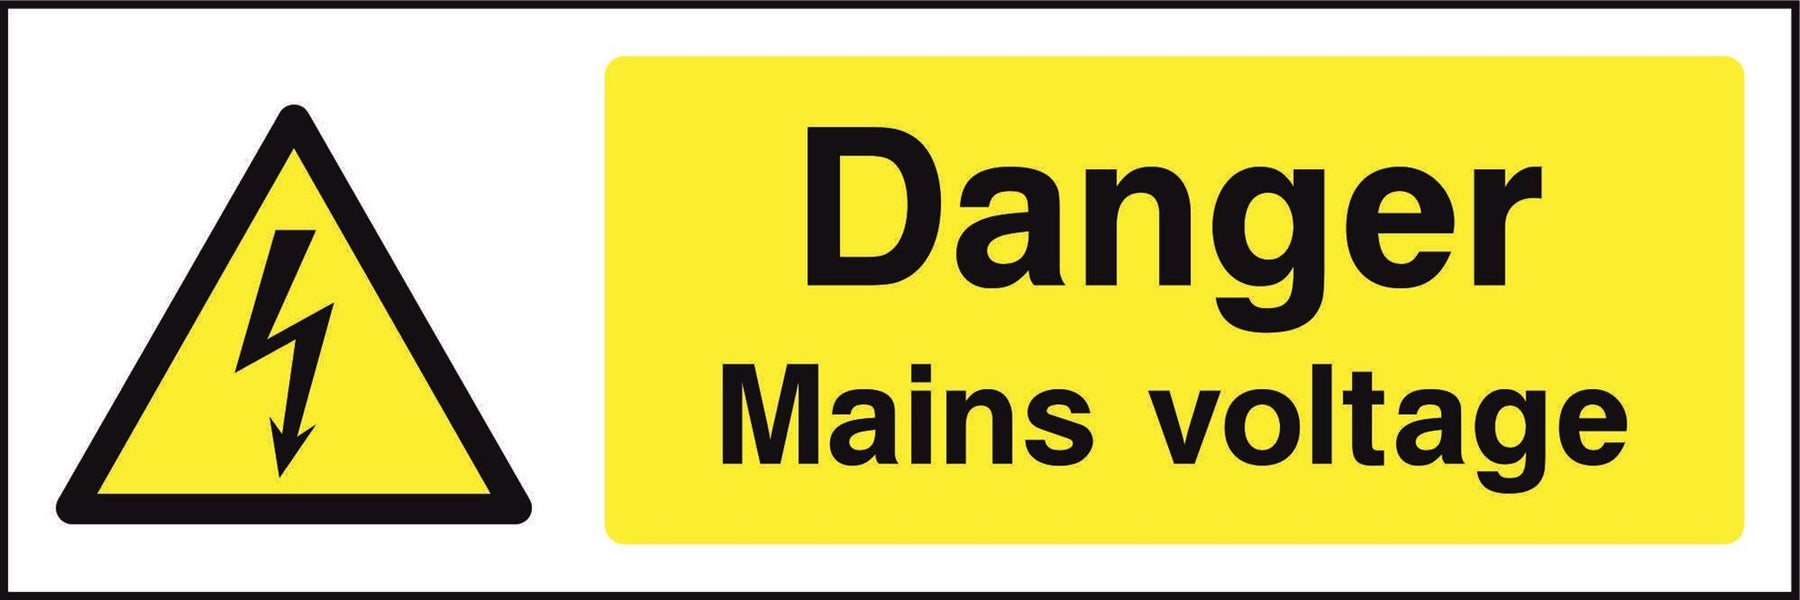 Danger Mains voltage